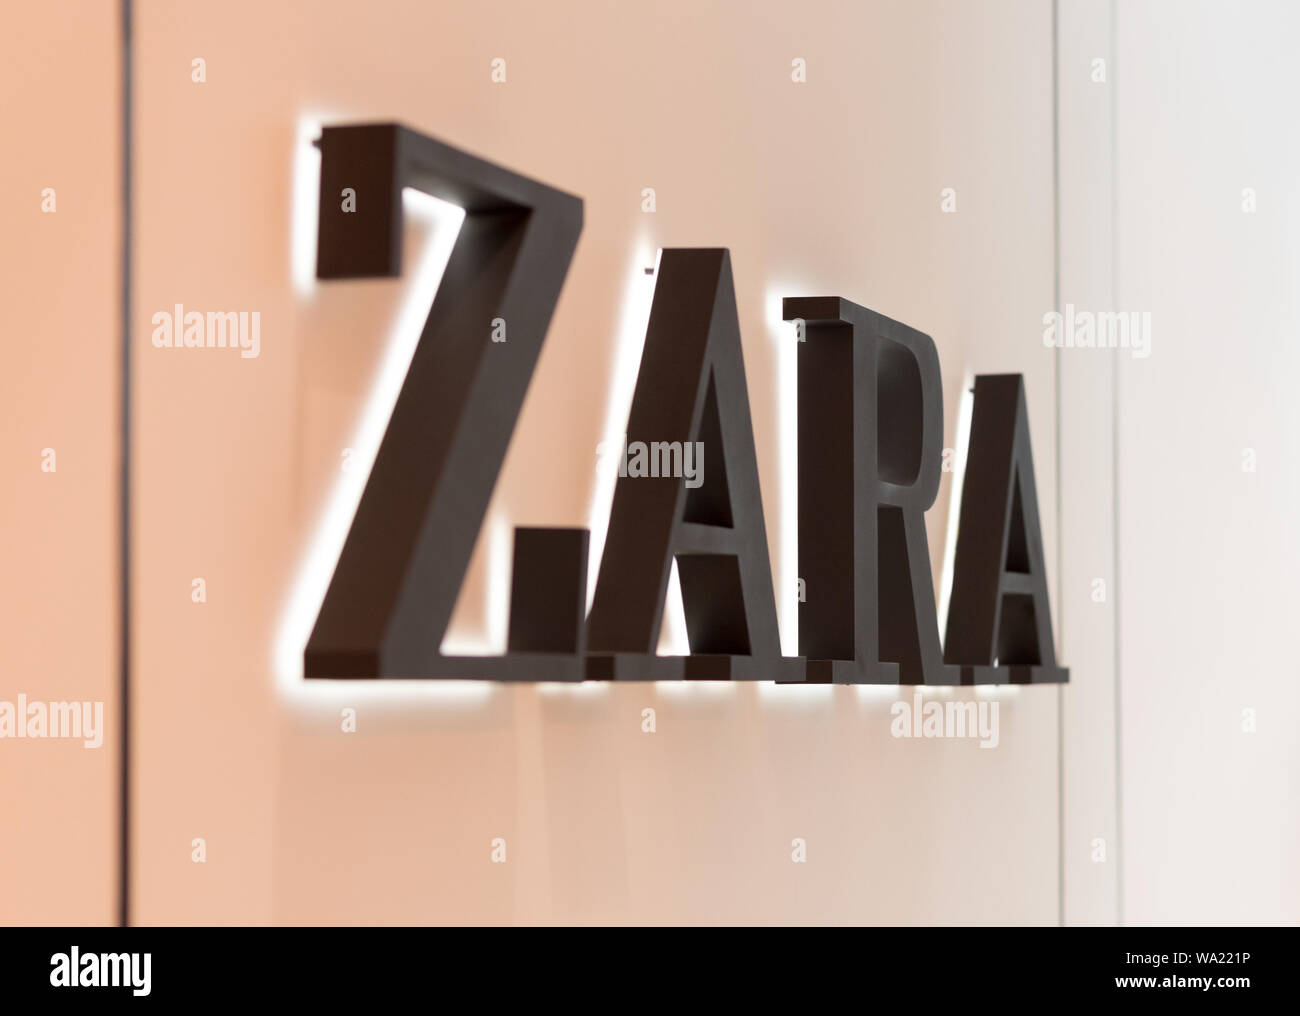 Bangkok, Thailand - May 26, 2019: a closeup of ZARA clothing shop sign. Stock Photo